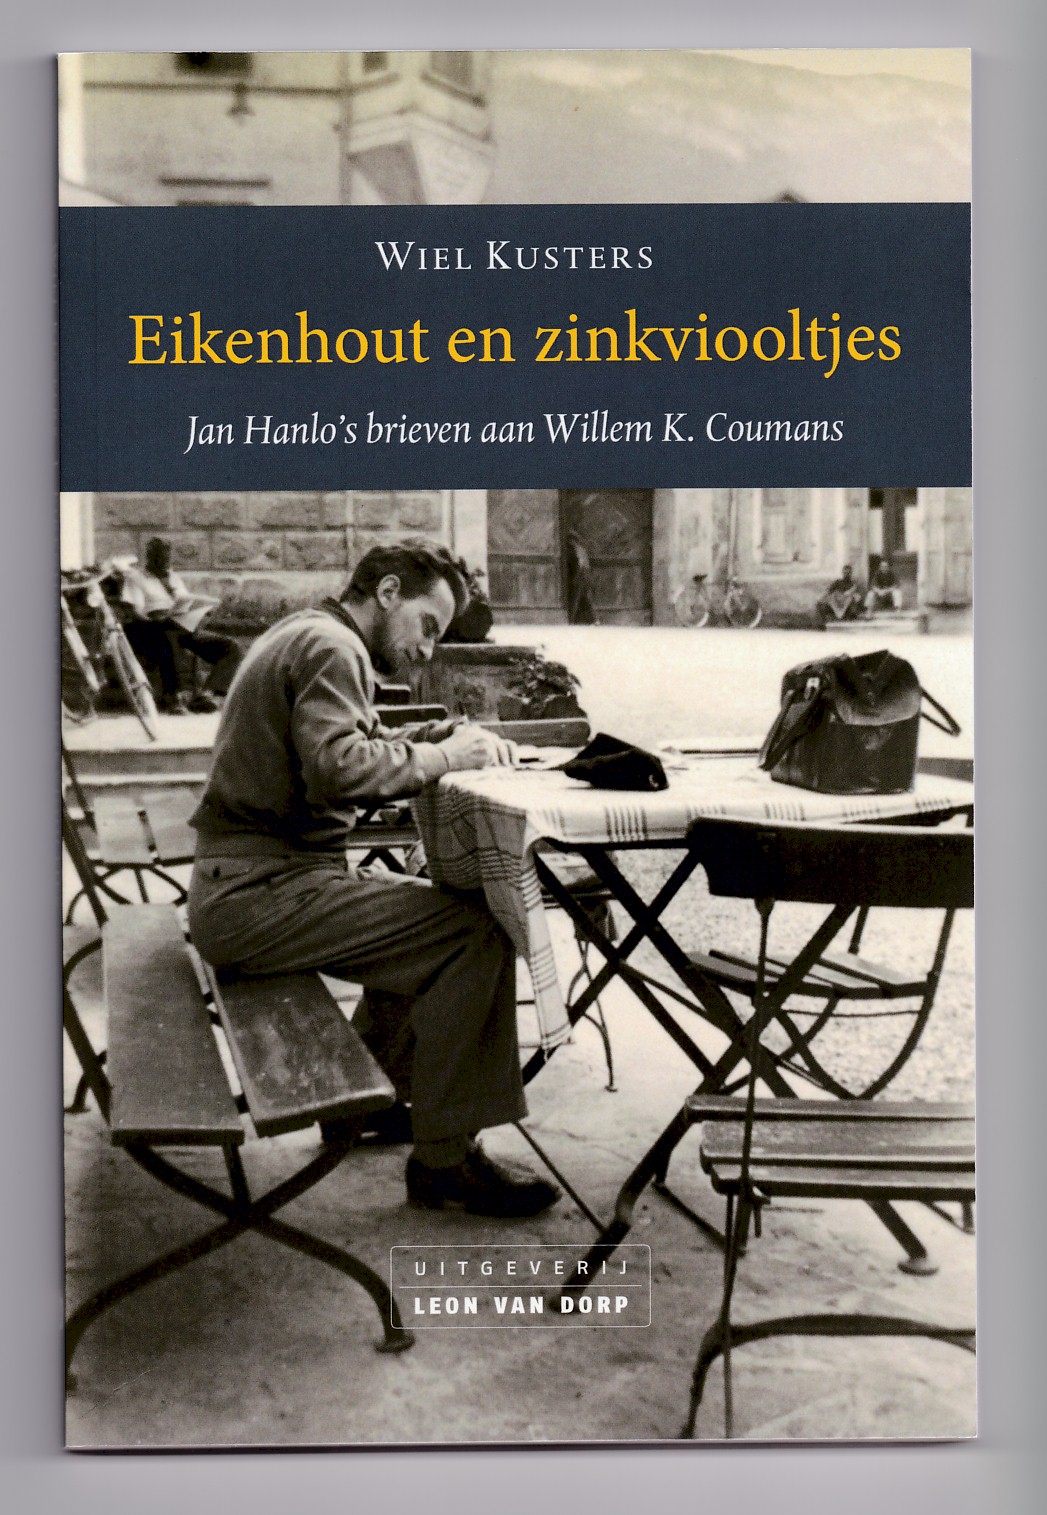 Kusters, Wiel - Eikenhout en zinkviooltjes, Jan Hanlo's brieven aan Willem K. Coumans